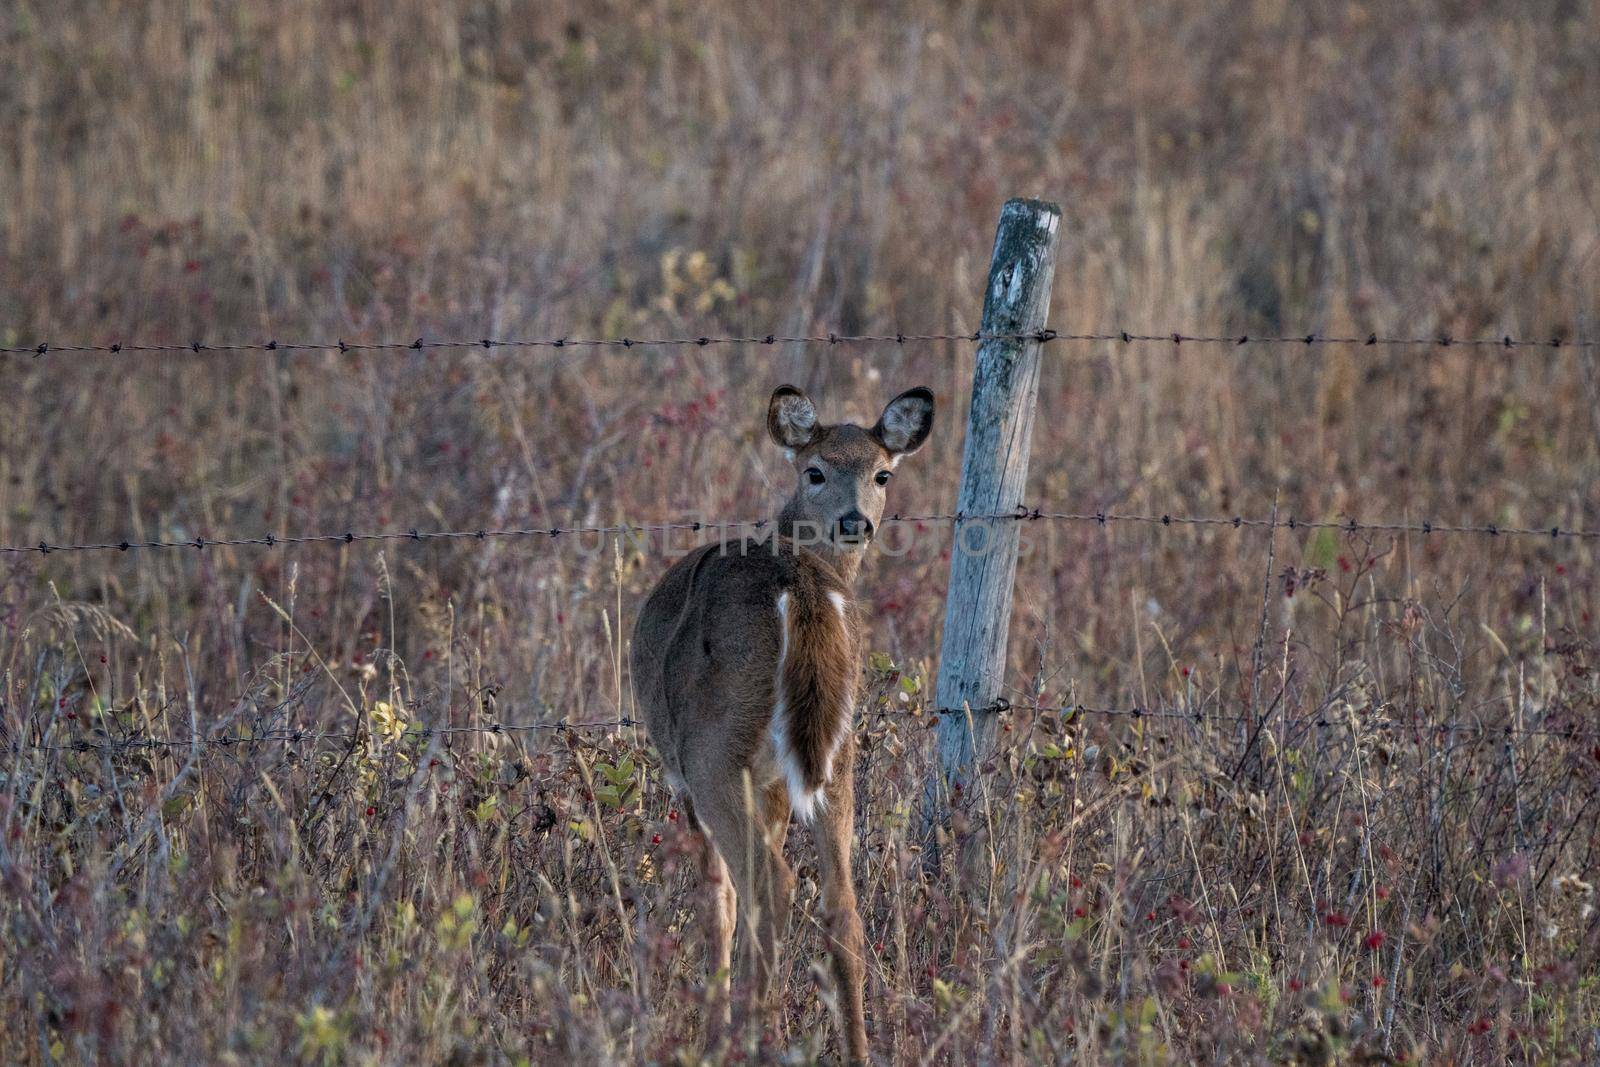 Deer in Wild by pictureguy